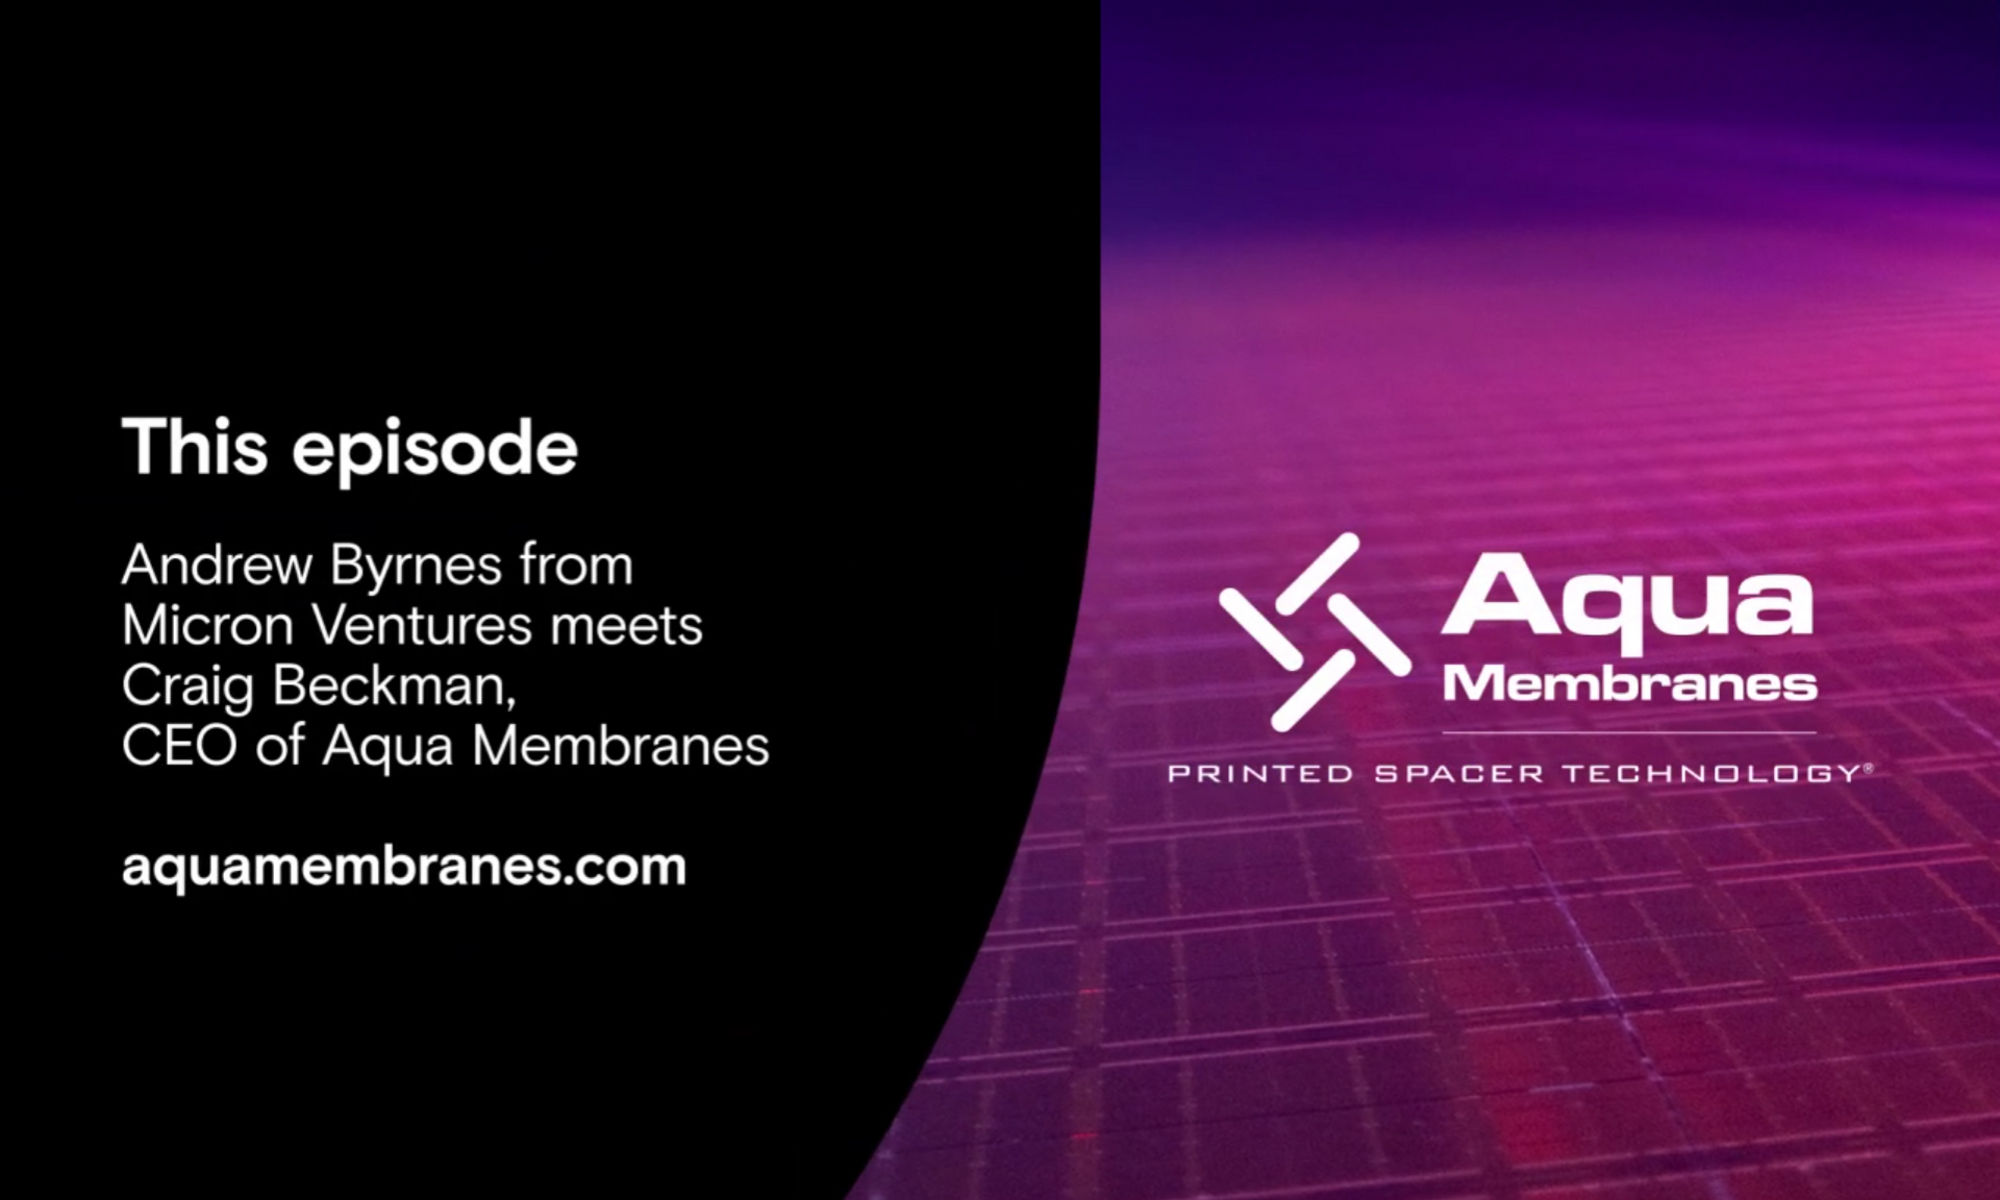 Aqua Membranesの創業者を紹介する5分間動画